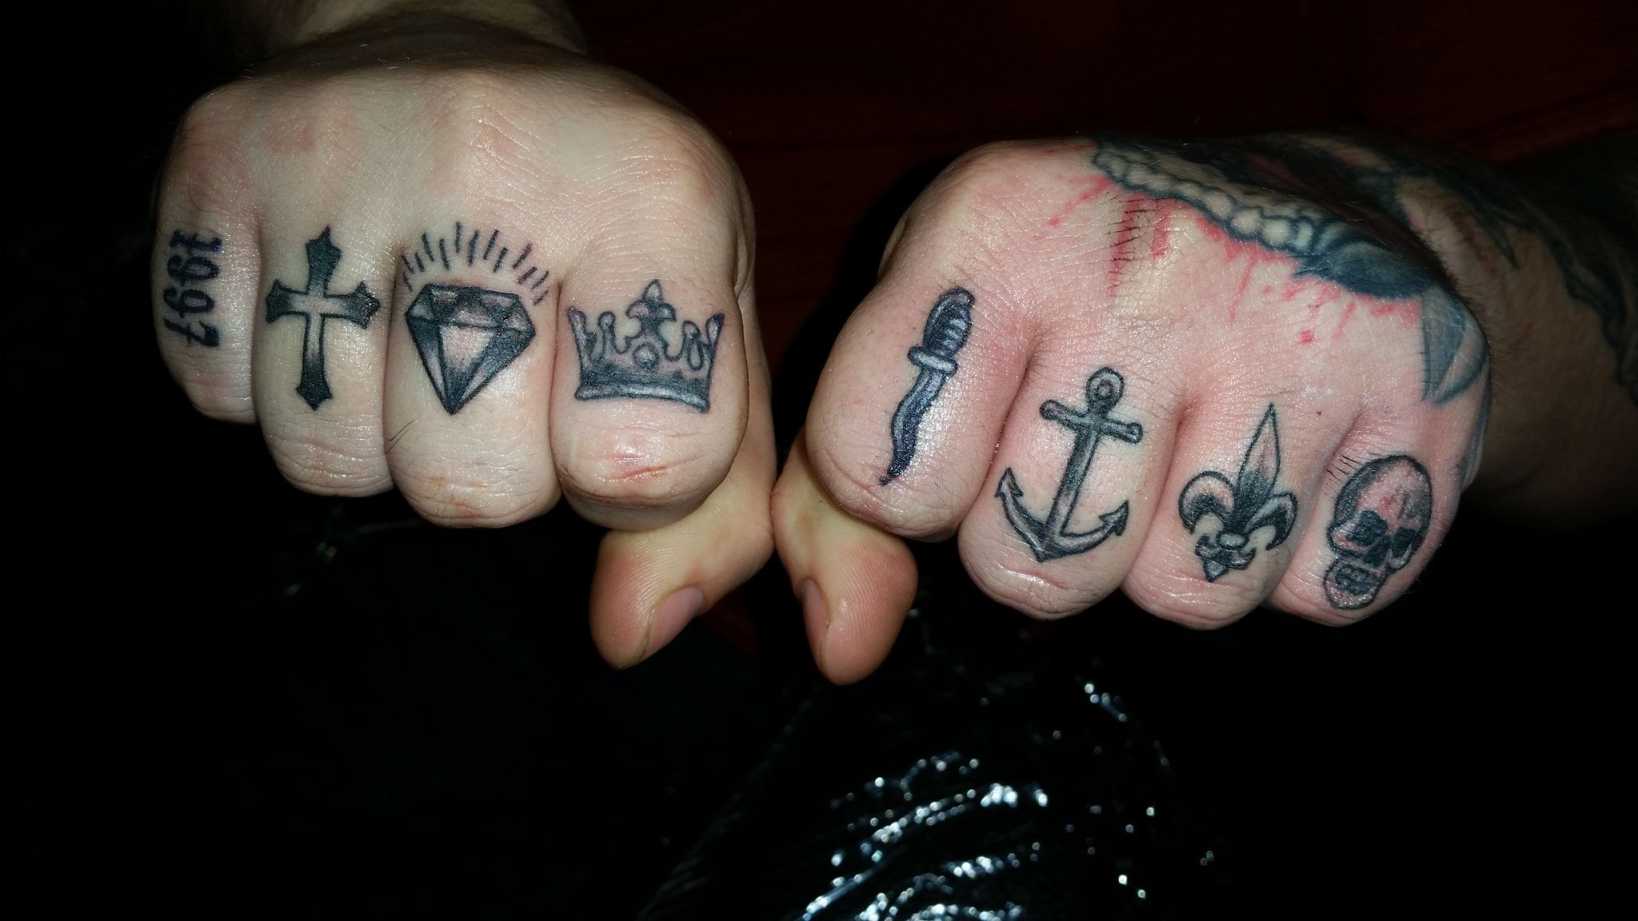 knucks #knuckles #finger #tattoo #tiny #blackandgrey #tattoo